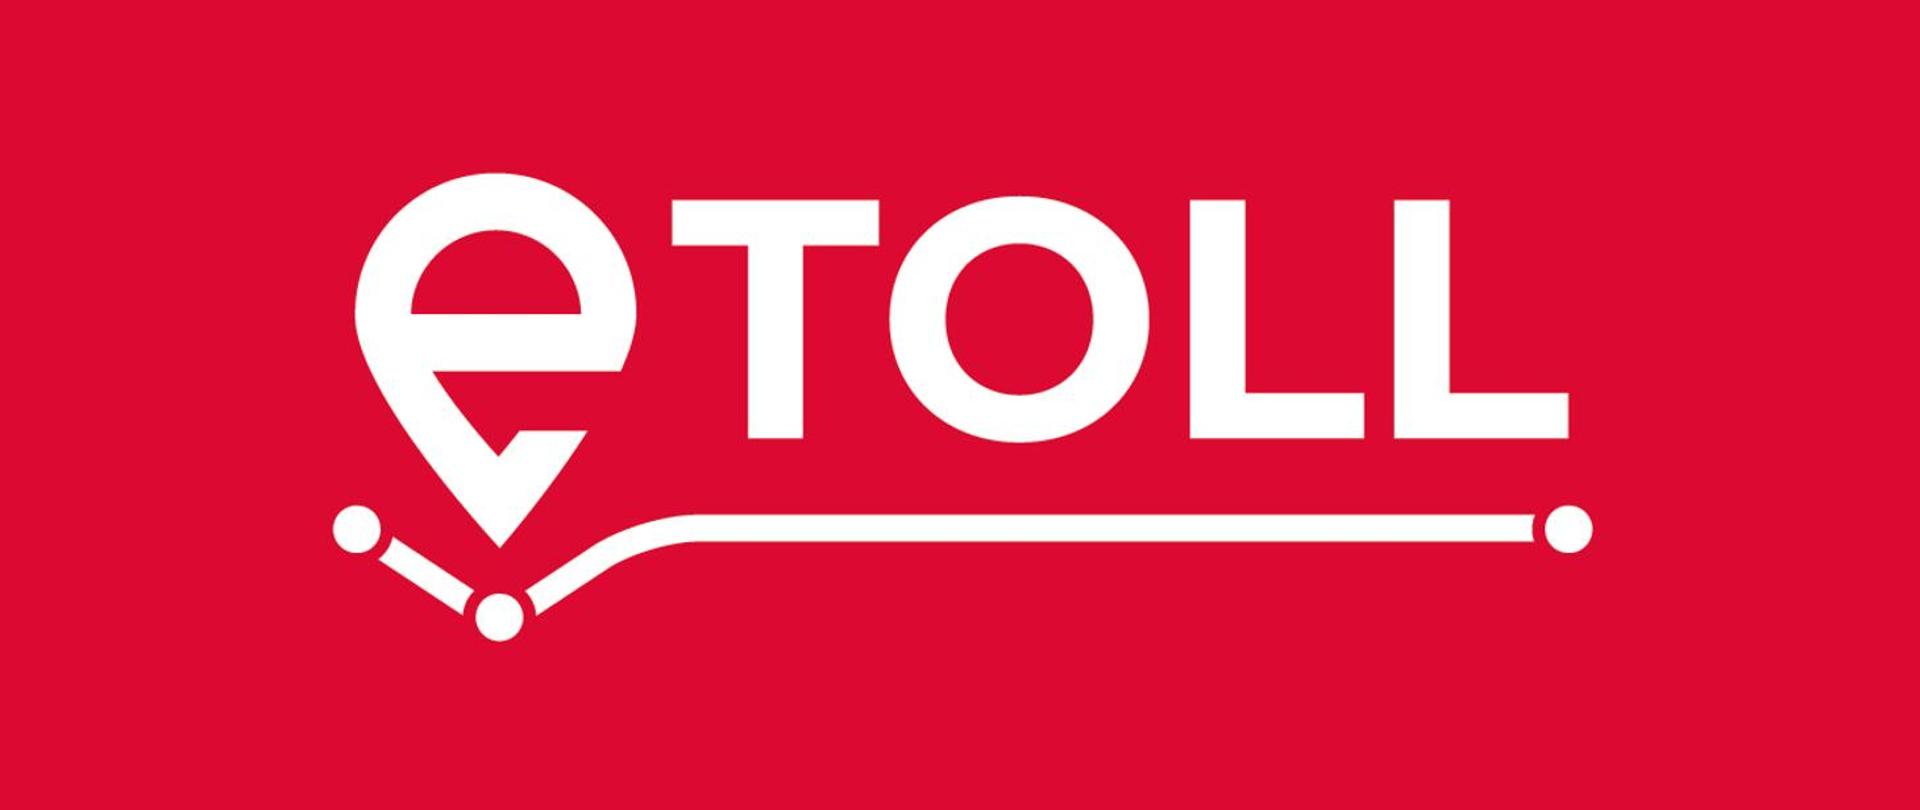 Grafika z logo systemu E-TOLL. Grafika przedstawia litery E TOLL, ułożone kolejno po sobie. Pod literami znajduje się linia, wykrzywiona w początkowej fazie w kształt trójkąta. Przypomina to ścieżkę drogową. Całość zawarta jest na czerwonej planszy. 